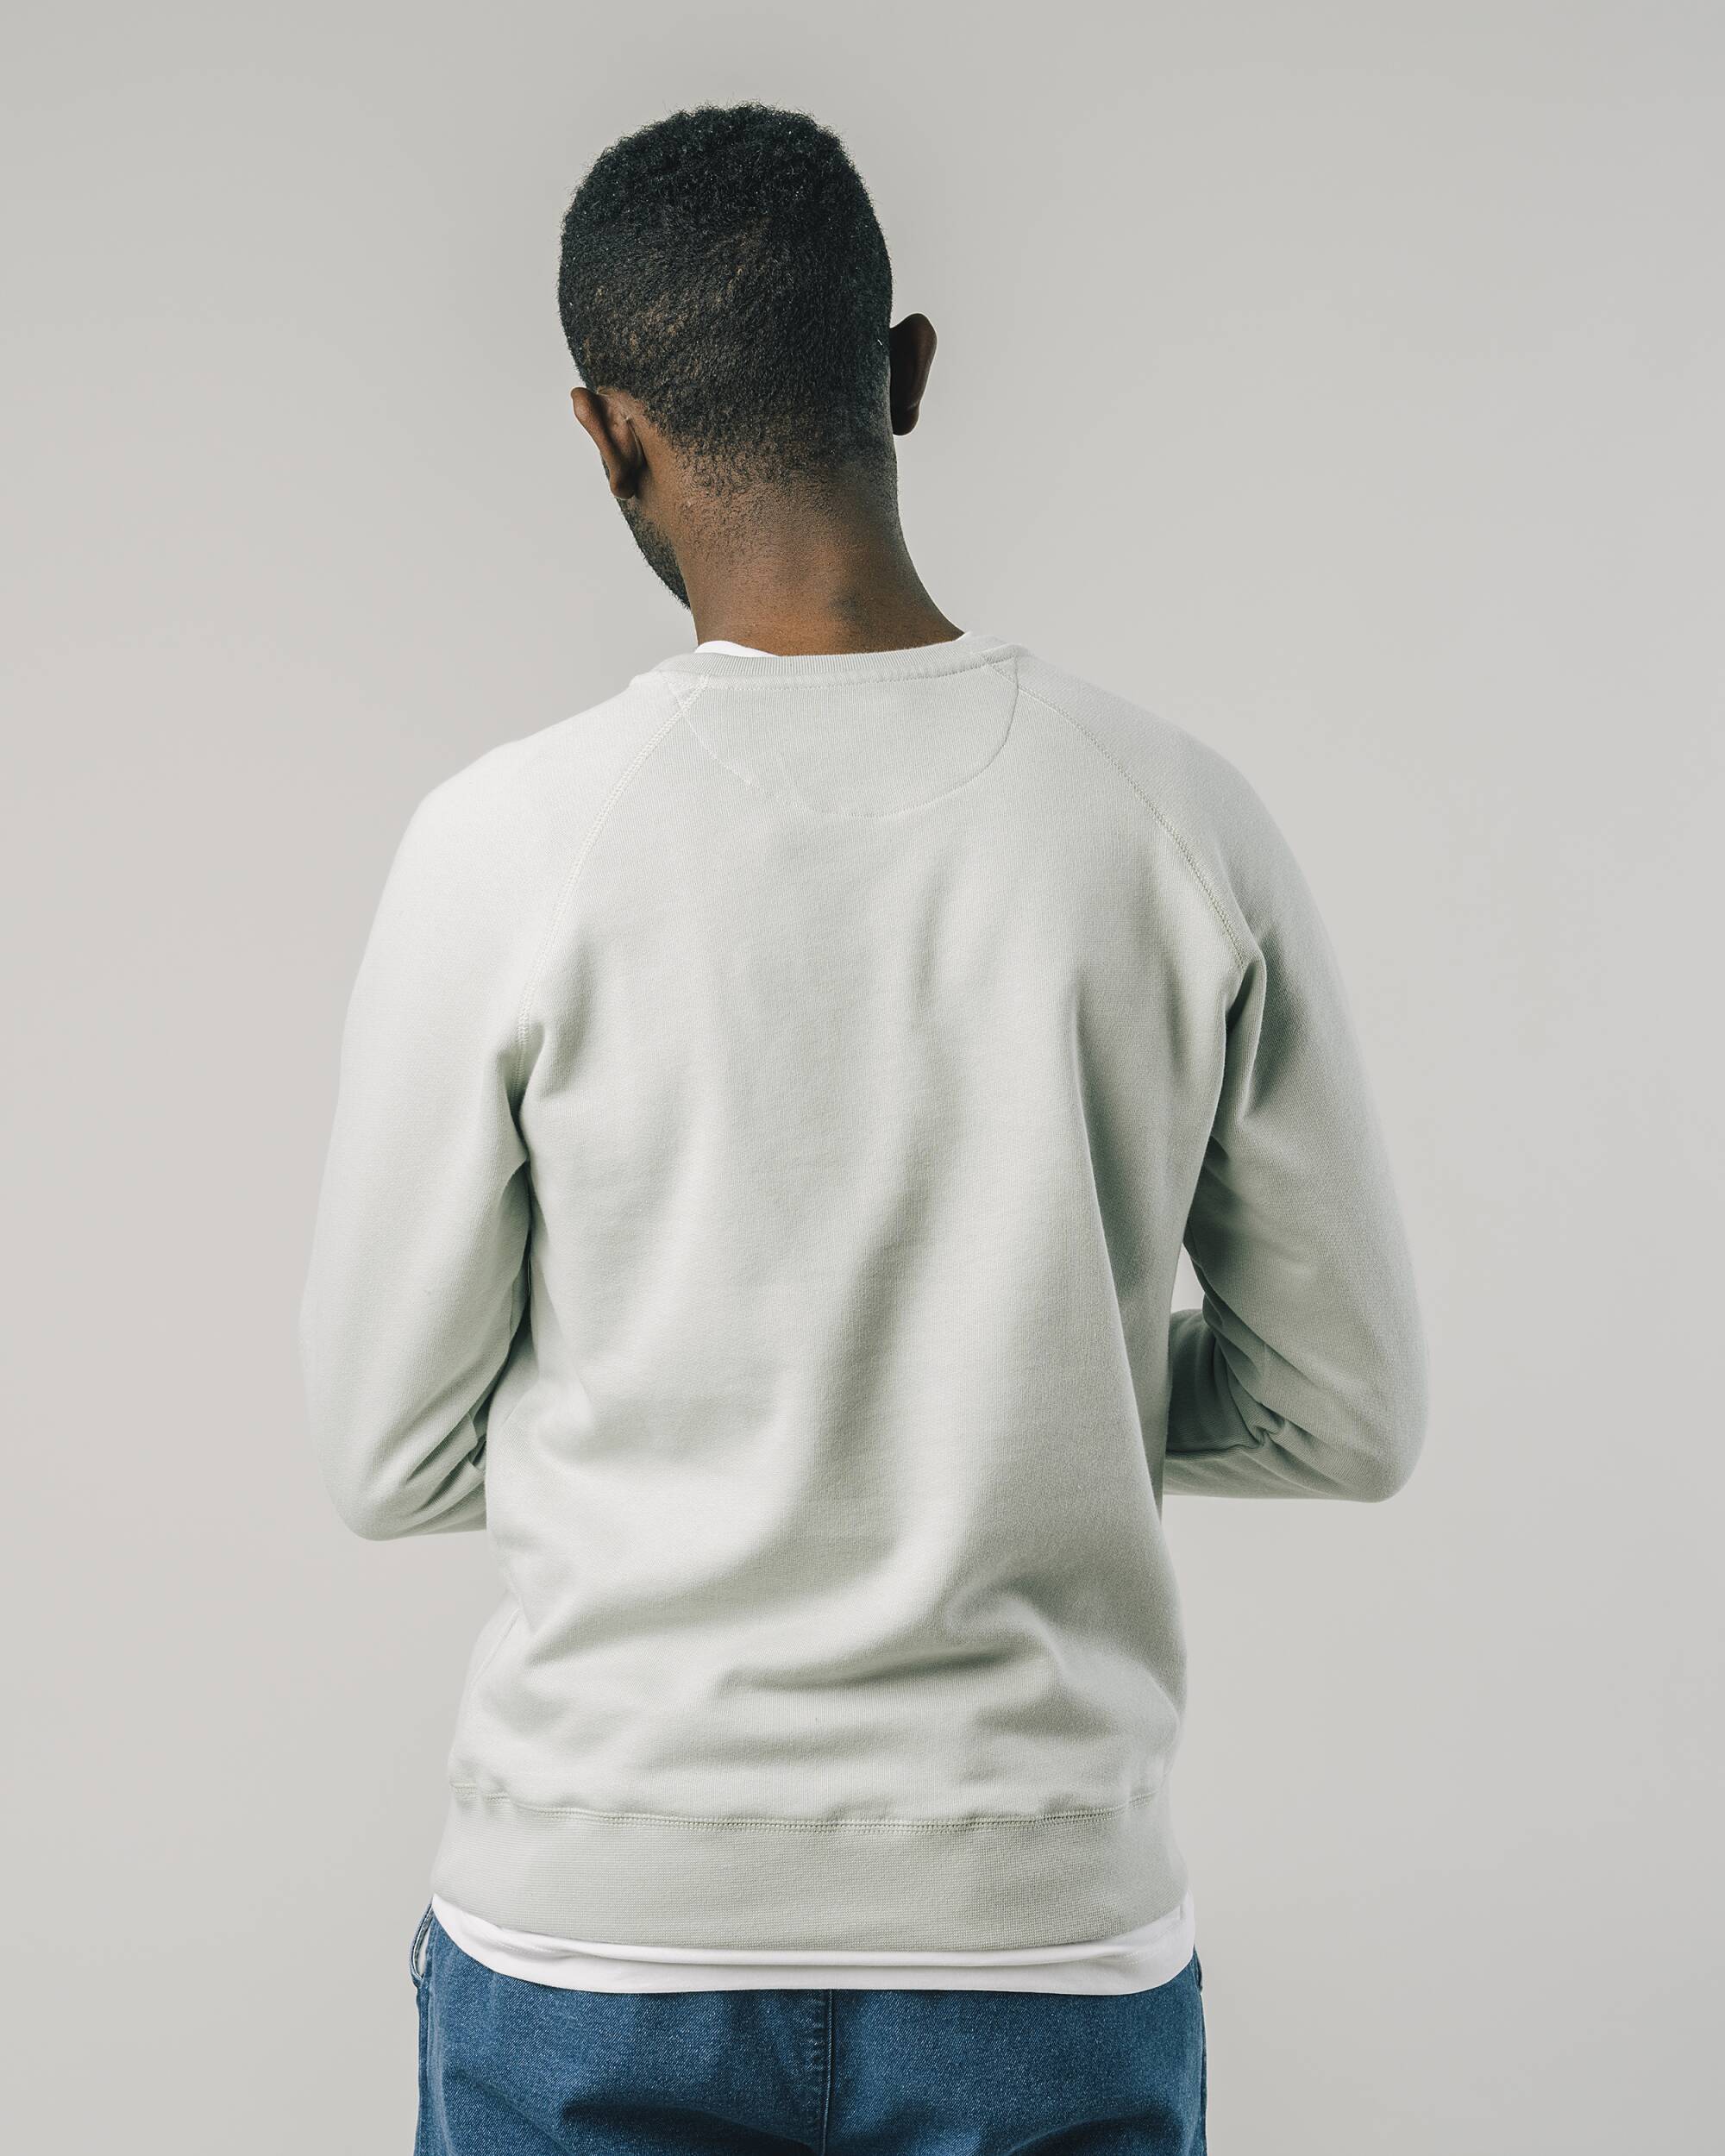 Sweatshirt "Wagon" in grau aus 100% Bio - Baumwolle von Brava Fabrics